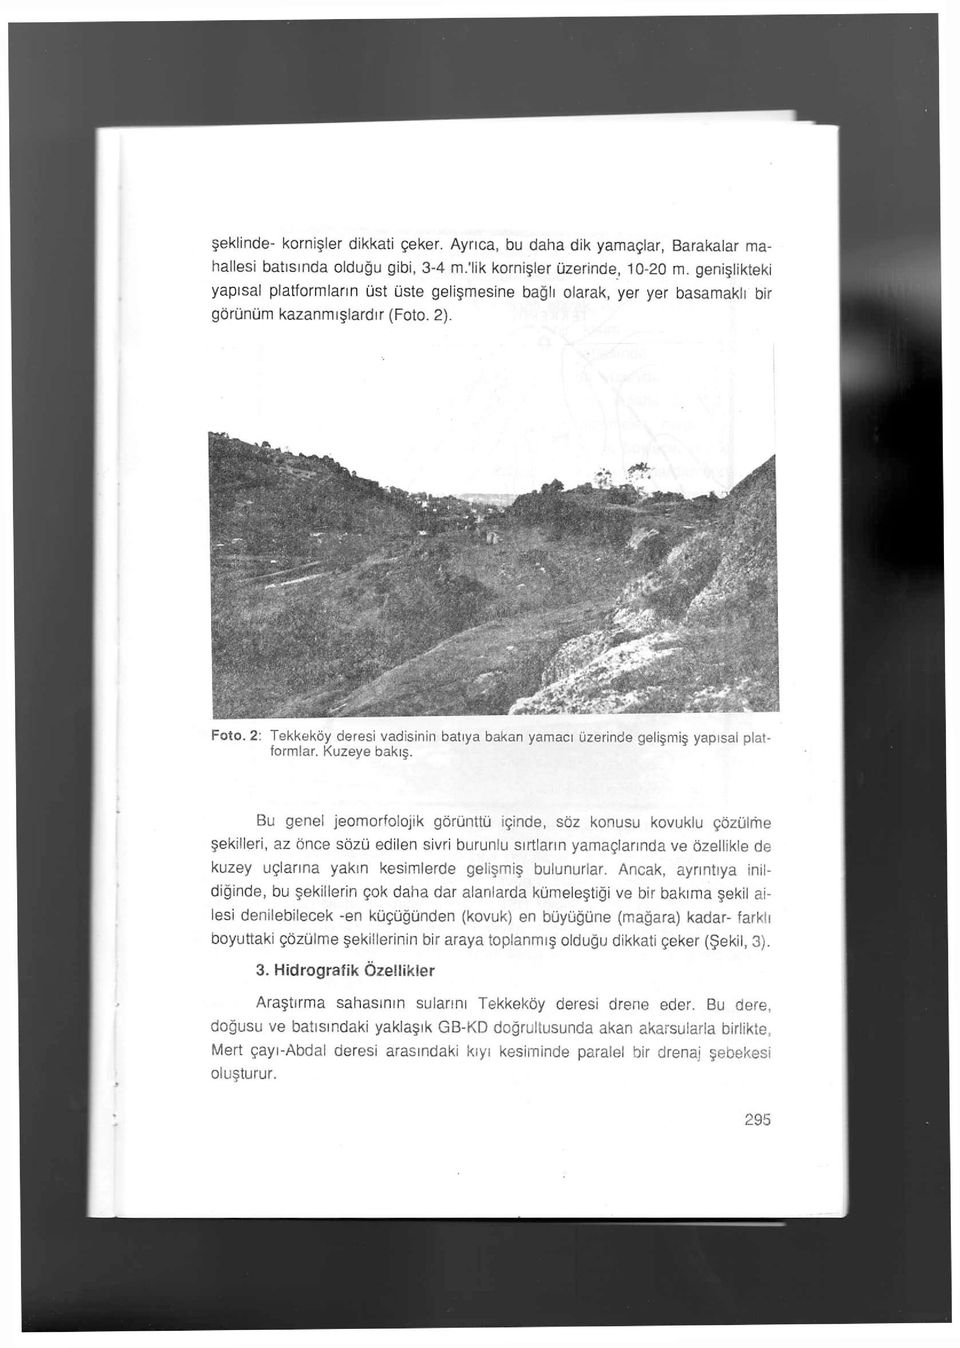 2: Tekkeköy deresi vadisinin batıya bakan yamacı üzerinde gelişmiş yapısal plat formlar. Kuzeye bakış.